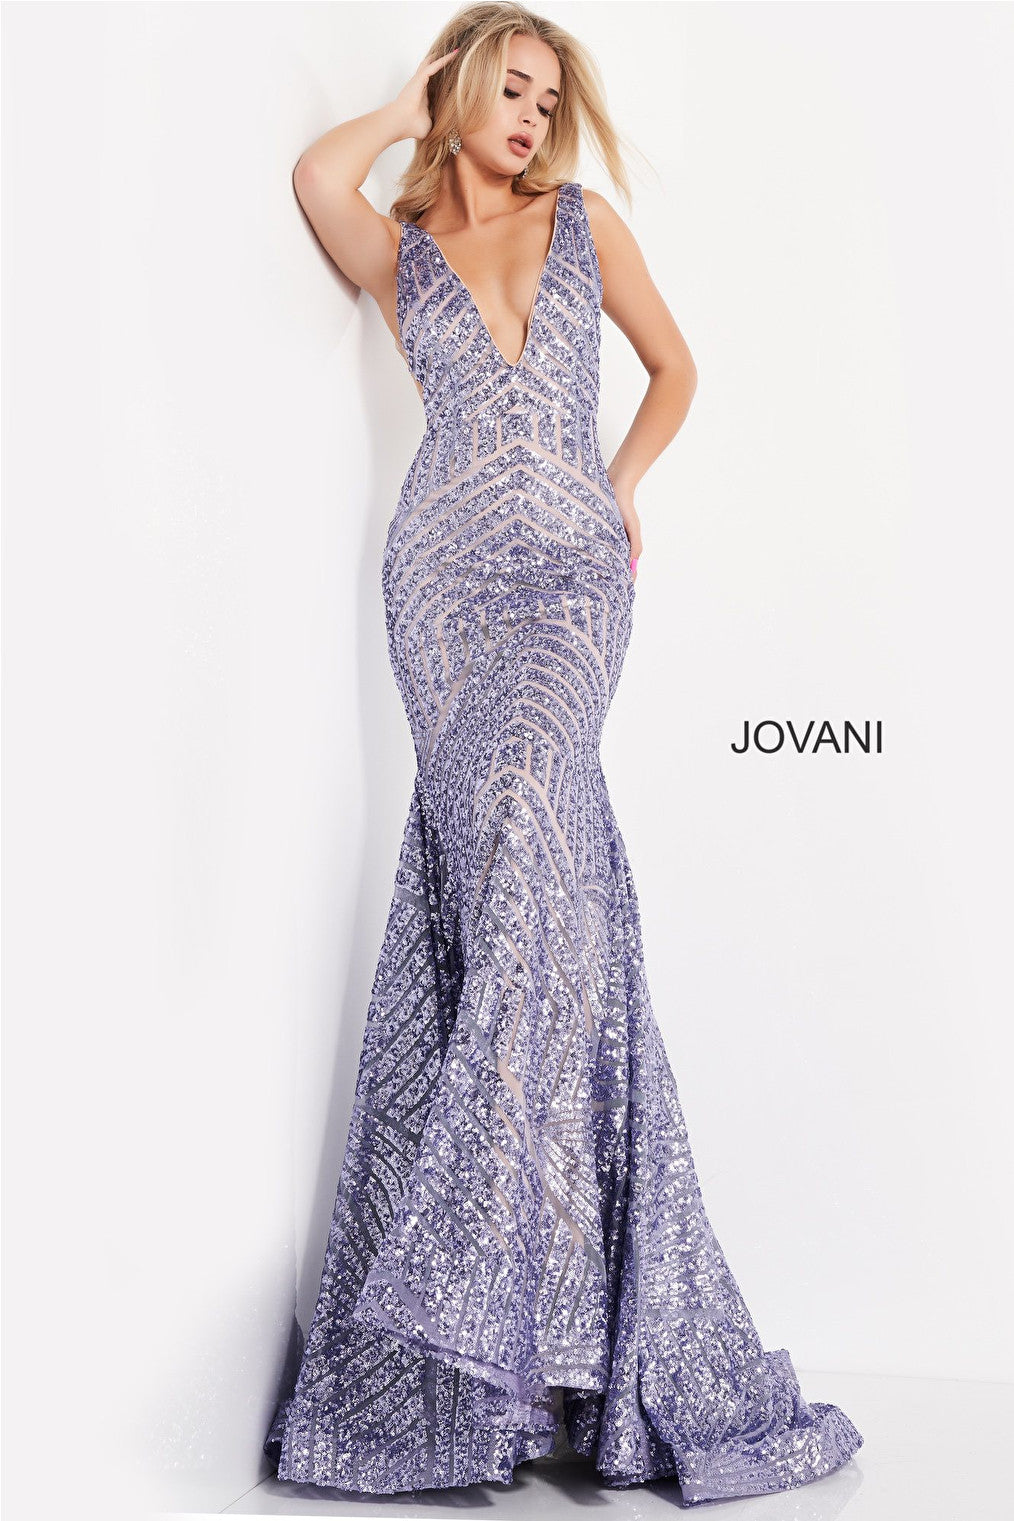 Jovani 59762 purple mermaid dress